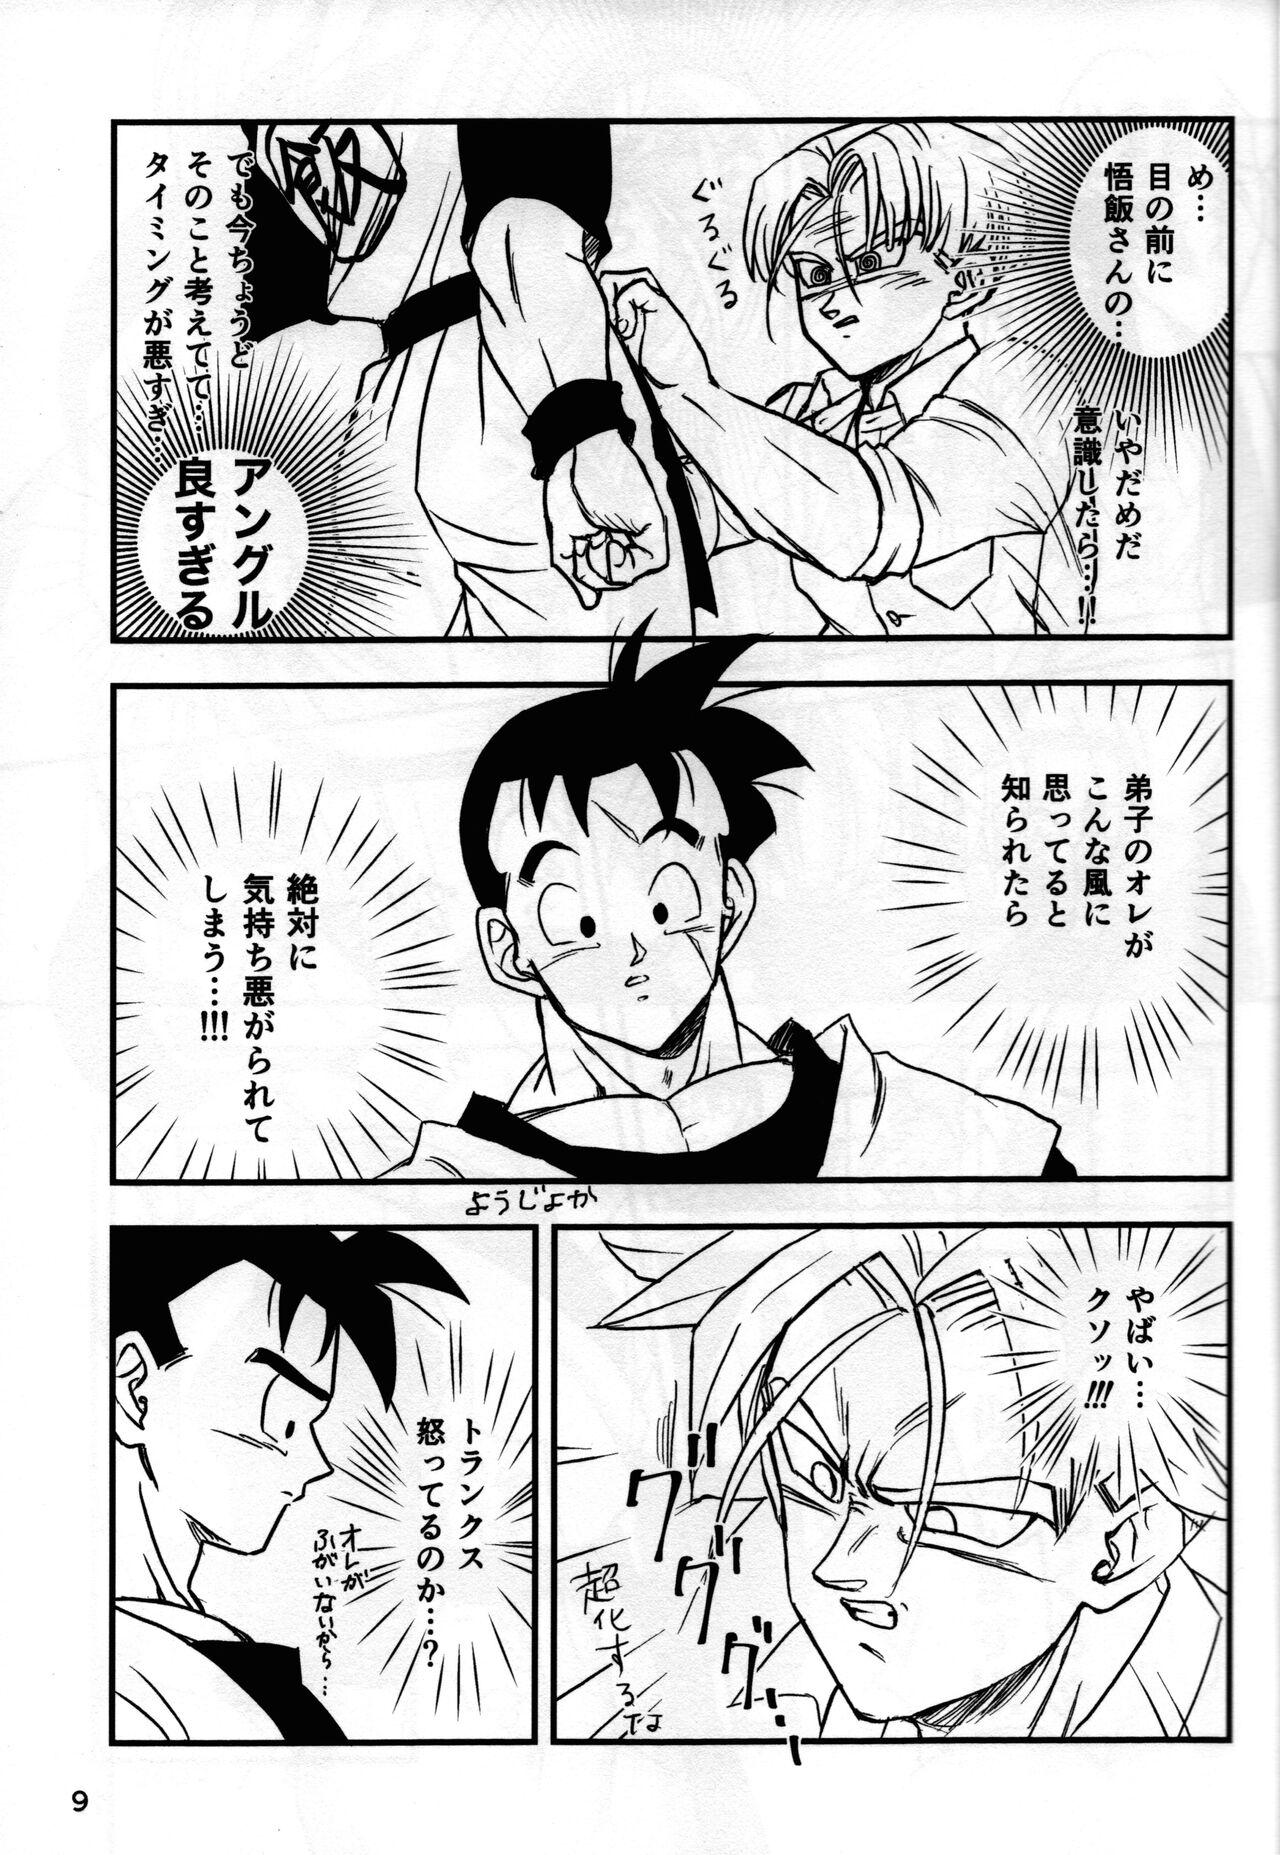 Ducha [Hakase] 2022 nenban tadashii (da) ki kata (Dragon Ball Z) - Dragon ball z Office - Page 9